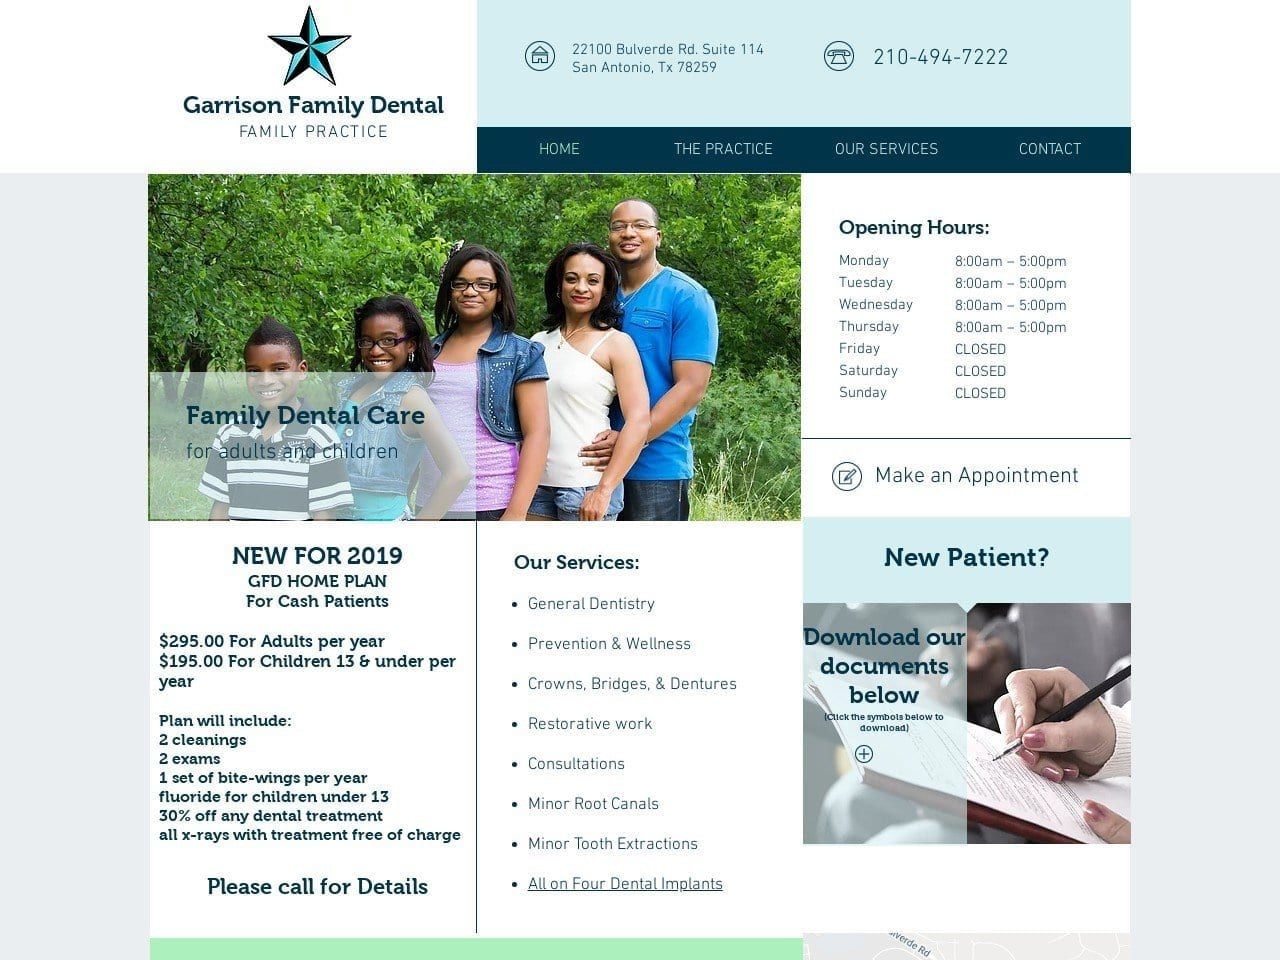 Garrison Family Dental Website Screenshot from garrisonfamilydental.com